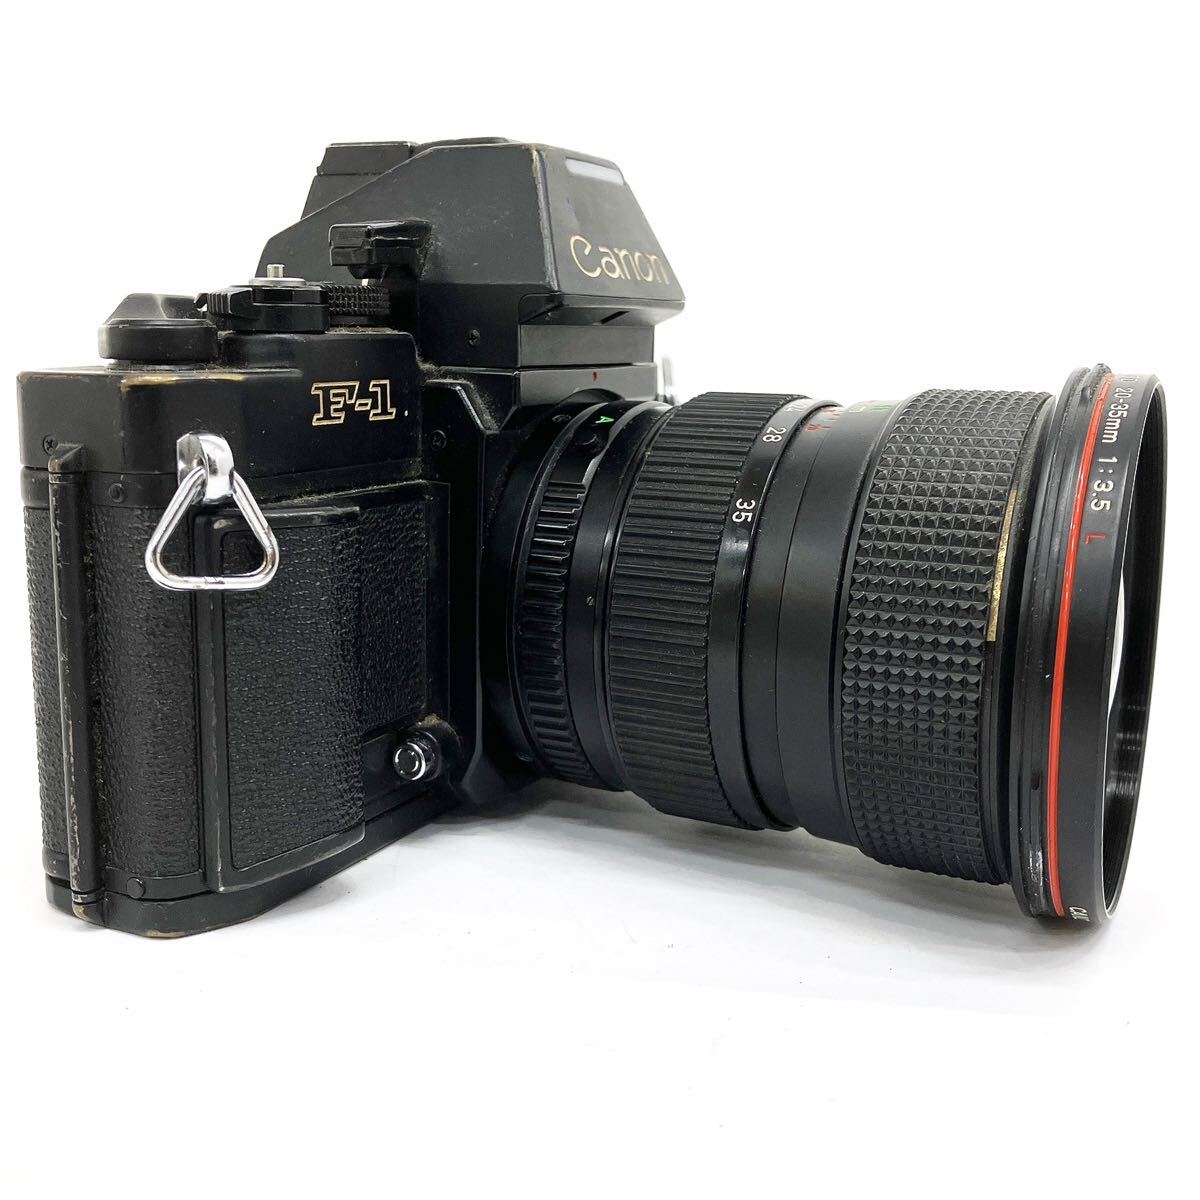 Canon キャノン F-1 ボディ ZOOM LENS FD 20-35mm 1:3.5mm L レンズ AE ワインダー FN セット 一眼レフカメラ alp川0415の画像2